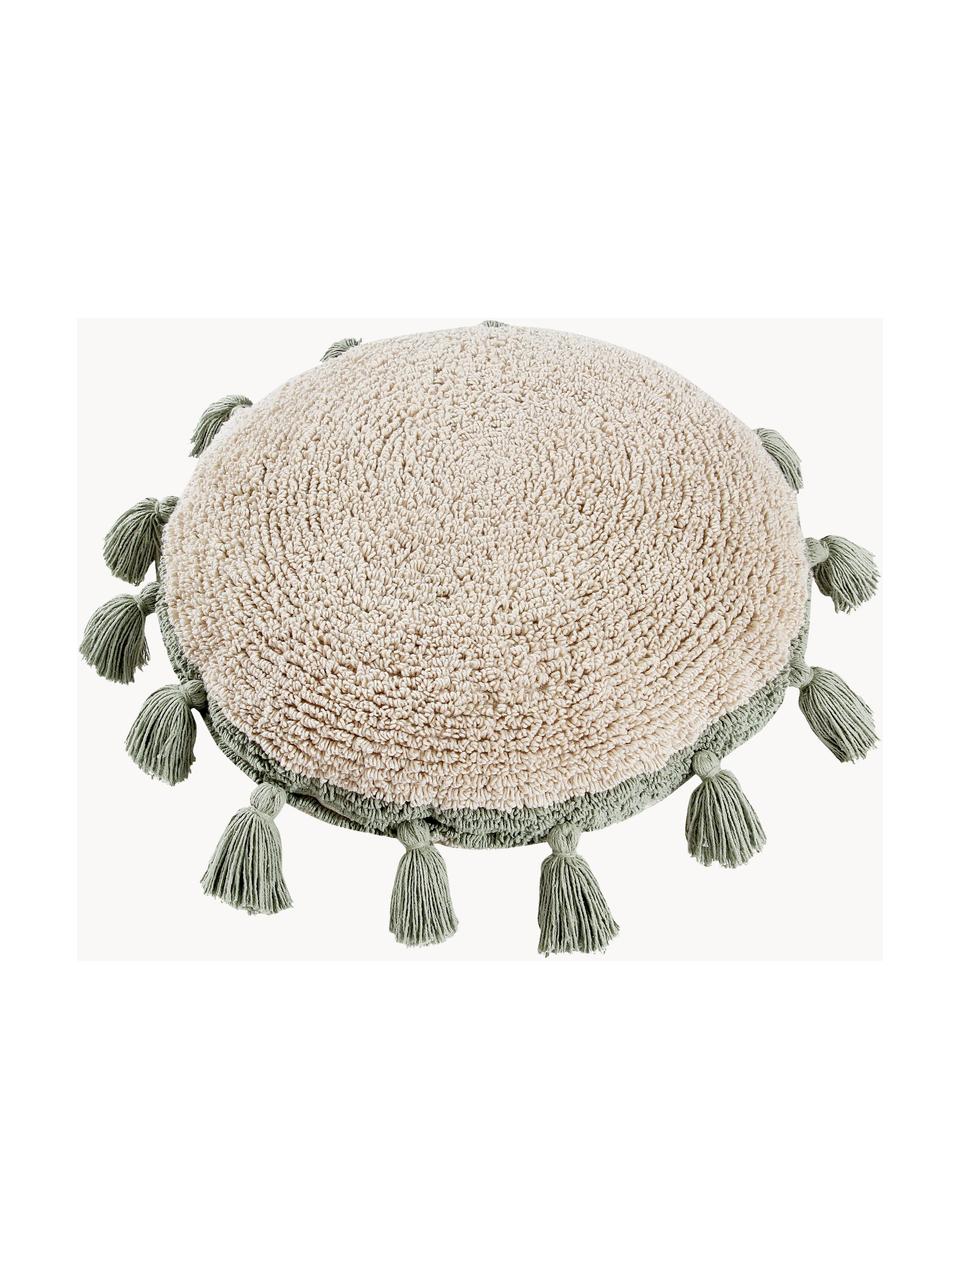 Ręcznie wykonana poduszka-przytulanka z frędzlami Circle, Tapicerka: 97% bawełna, 3% pozostałe, Jasny beżowy, szałwiowy zielony, Ø 48 cm